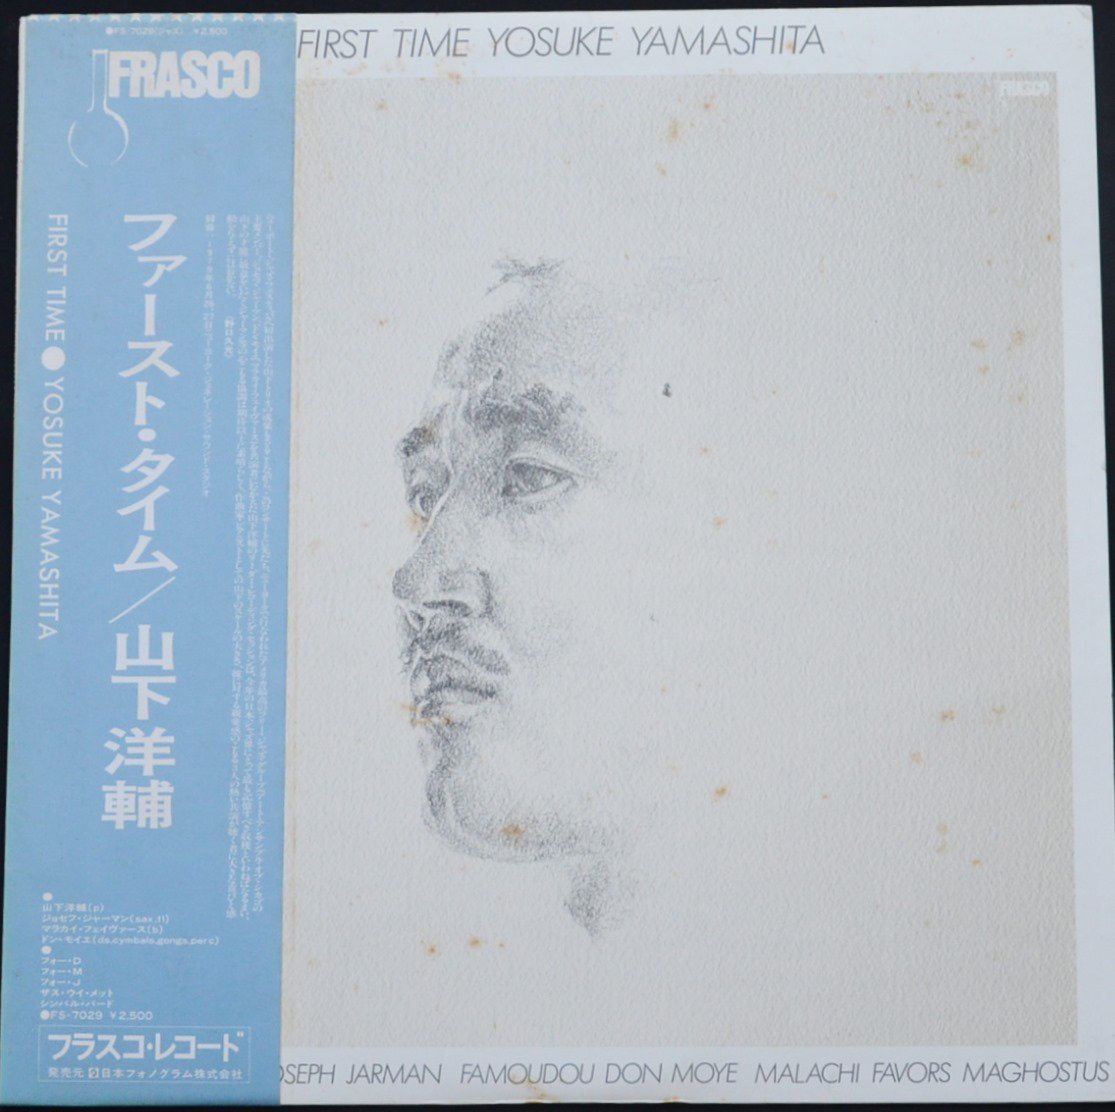 山下洋輔 YOSUKE YAMASHITA / ファースト・タイム FIRST TIME (LP)